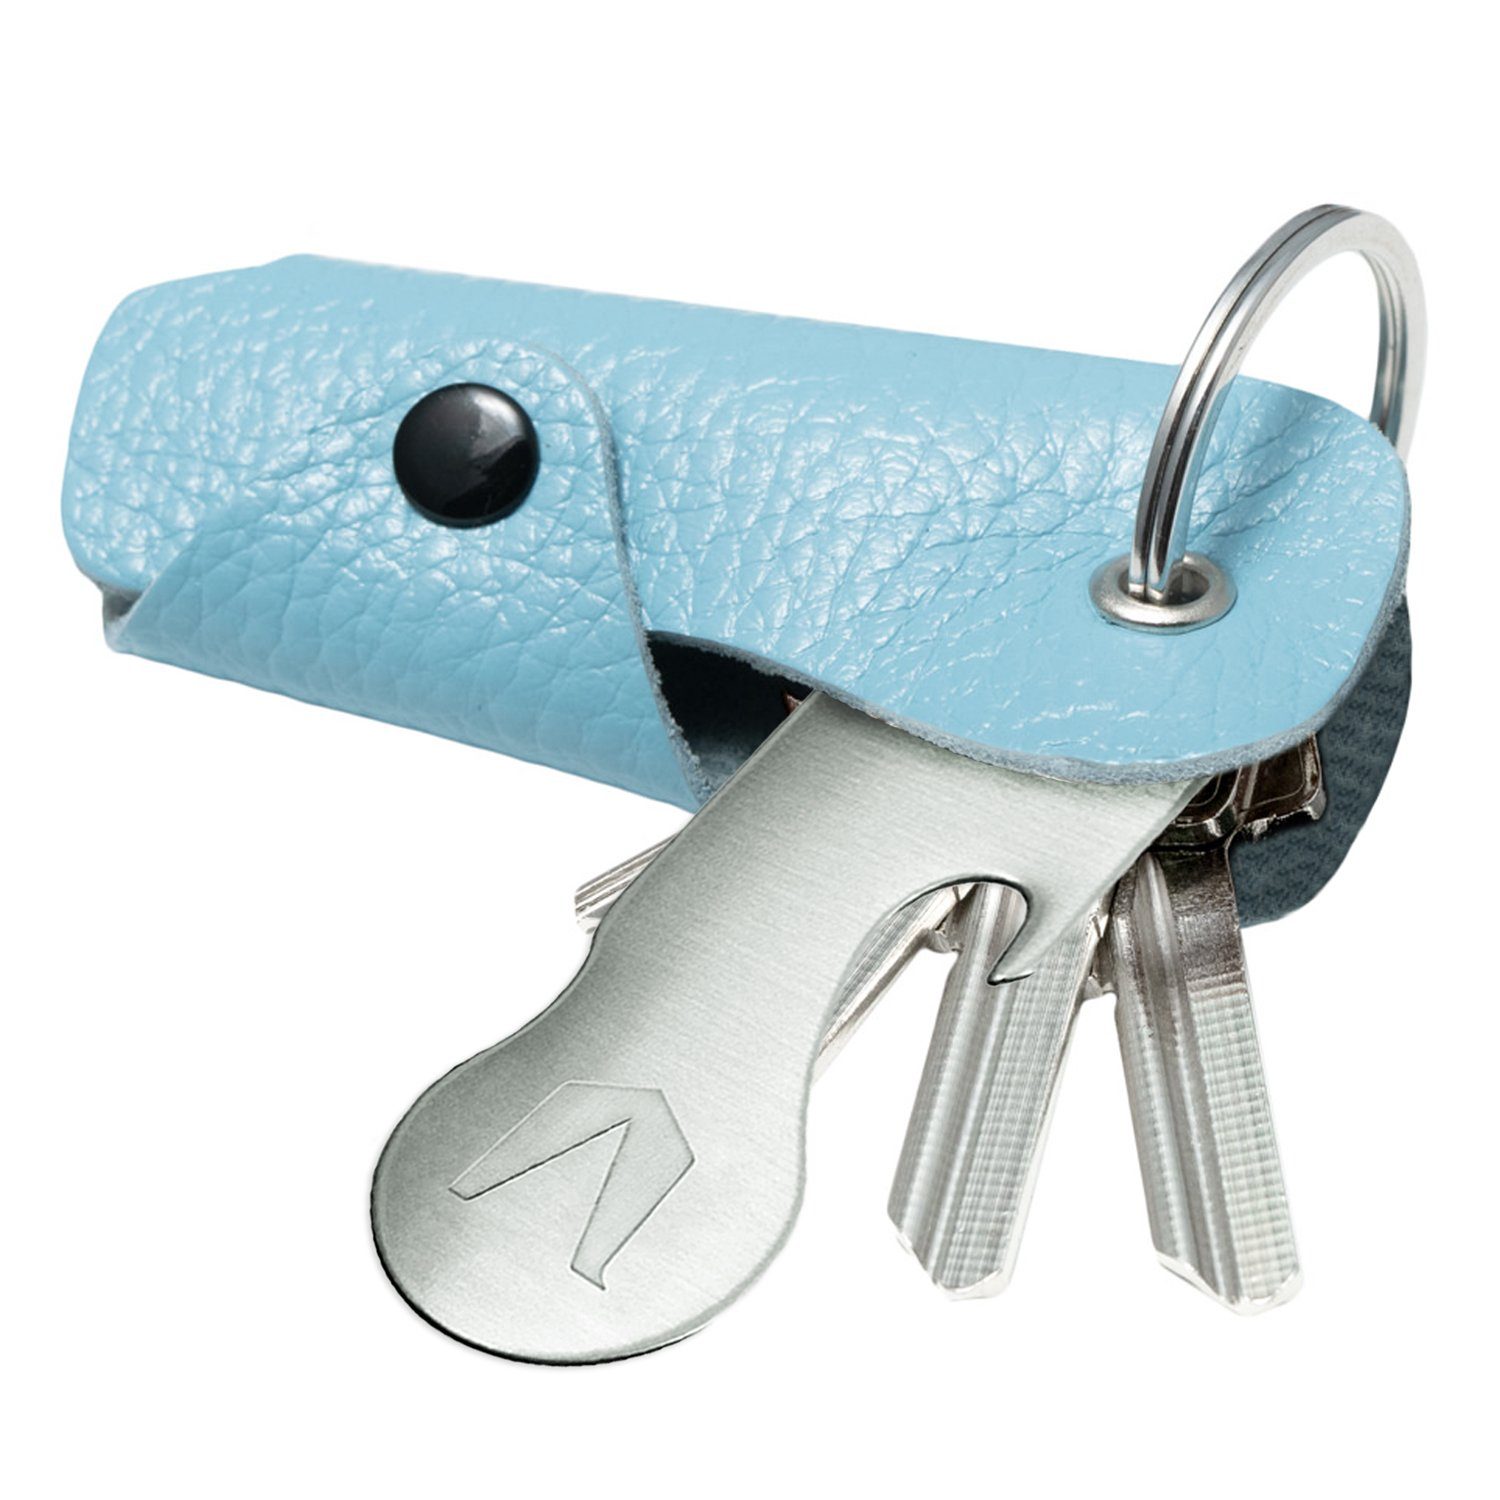 MAGATI Schlüsseltasche Occhio 1-6 Leder Hellblau Nero Schlüsselanhänger Schlüssel, für Platz aus mit Einkaufswagenlöser